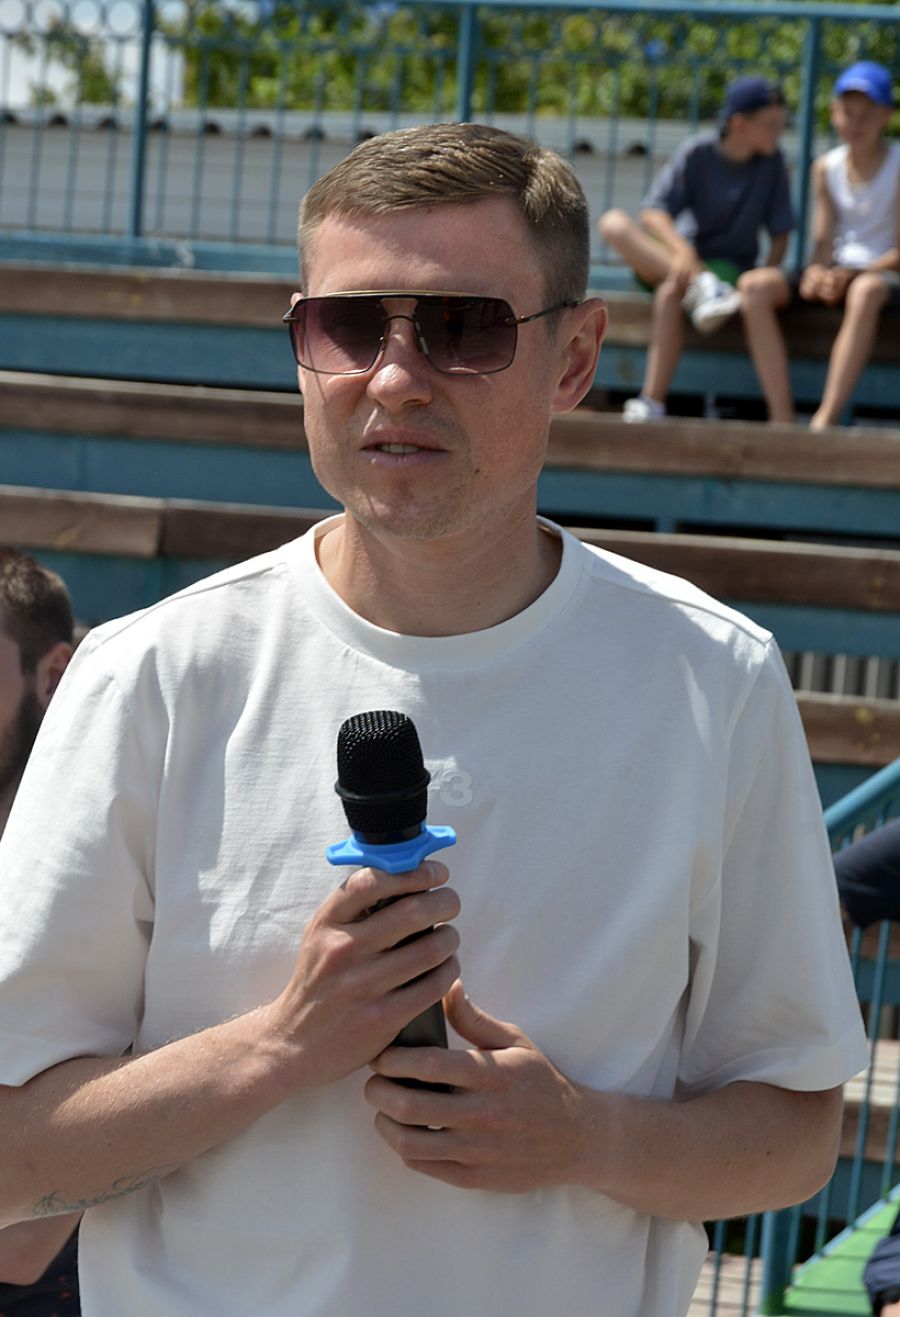 Сергей Нестеренко стал почетным гостем турнира. Фото: Александр Кривоножко